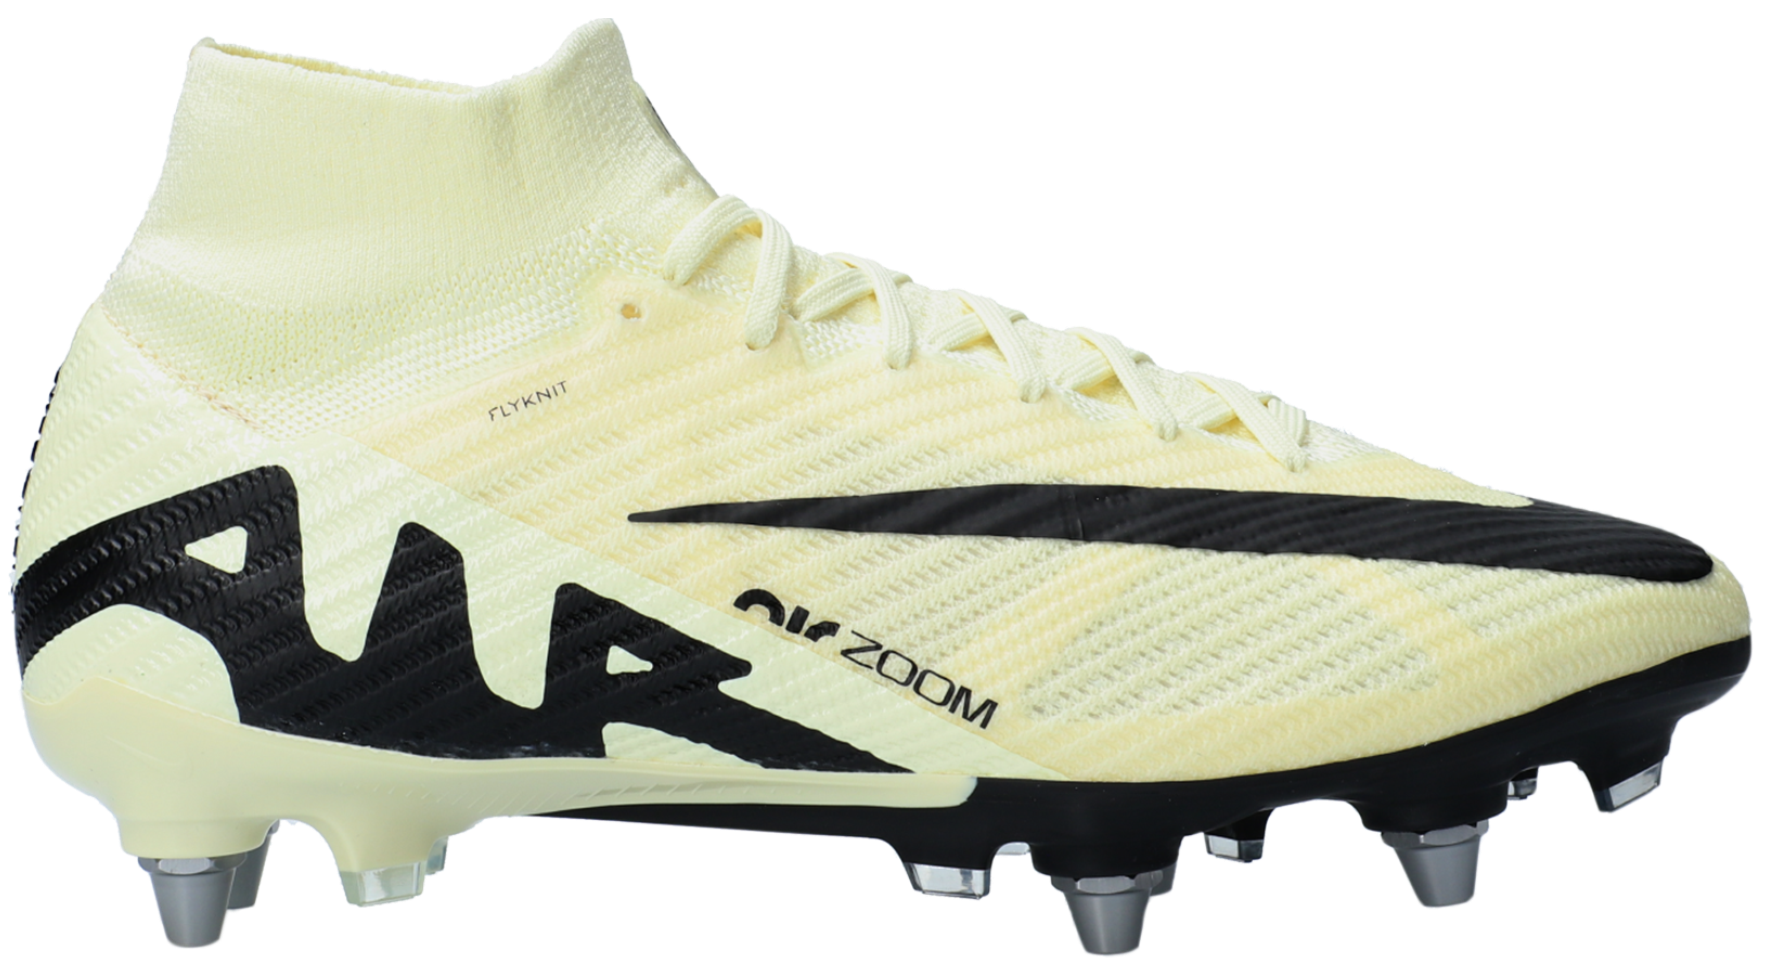 Ποδοσφαιρικά παπούτσια Nike ZOOM SUPERFLY 9 ELITE SG-PRO P